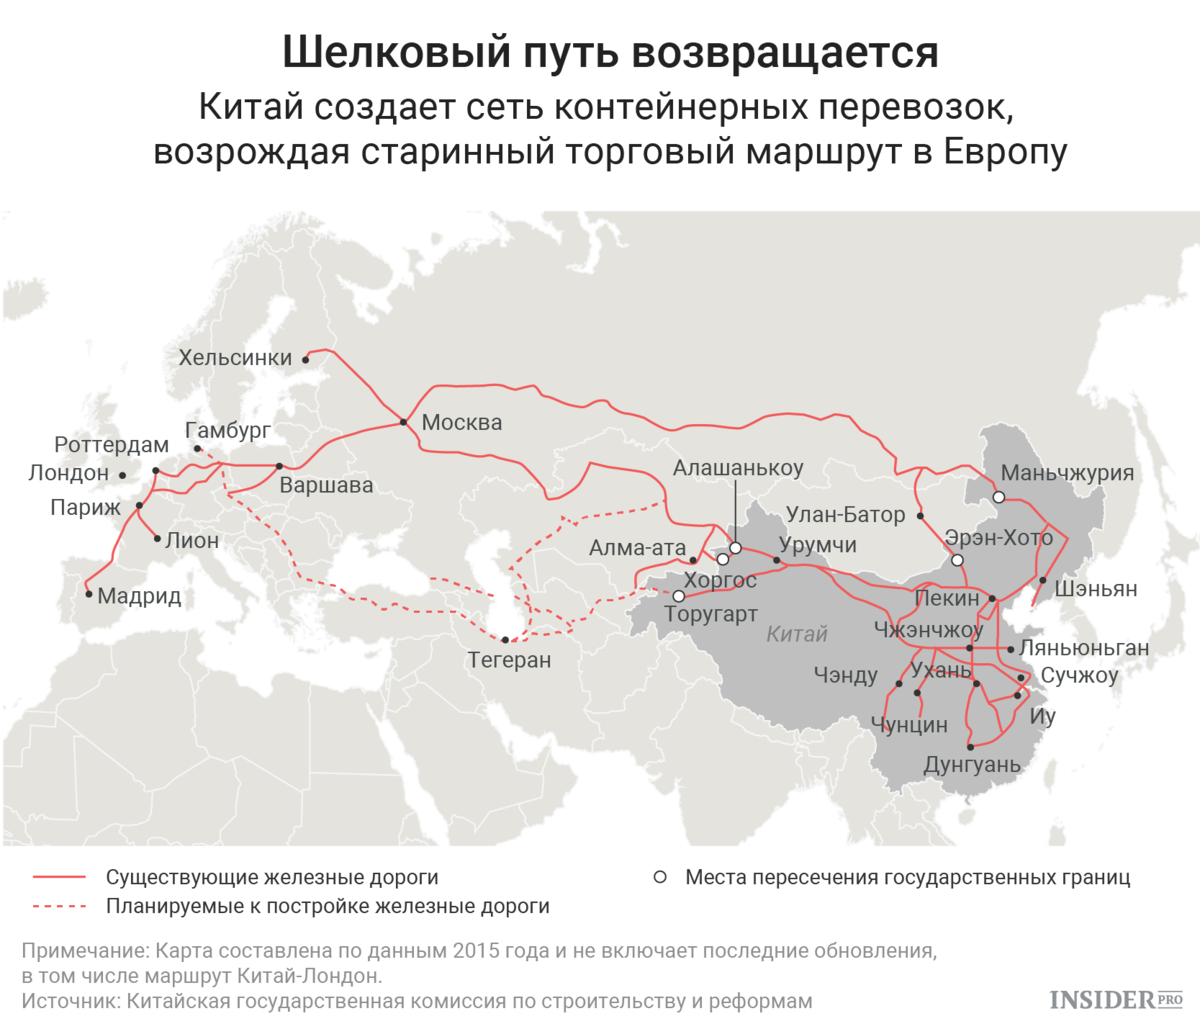 Железная дорога шелковый путь Китай-Европа. Шелковый путь Китая маршрут. Железная дорога новый шелковый путь Китая. Шелковый путь Китай Европа автодорога.